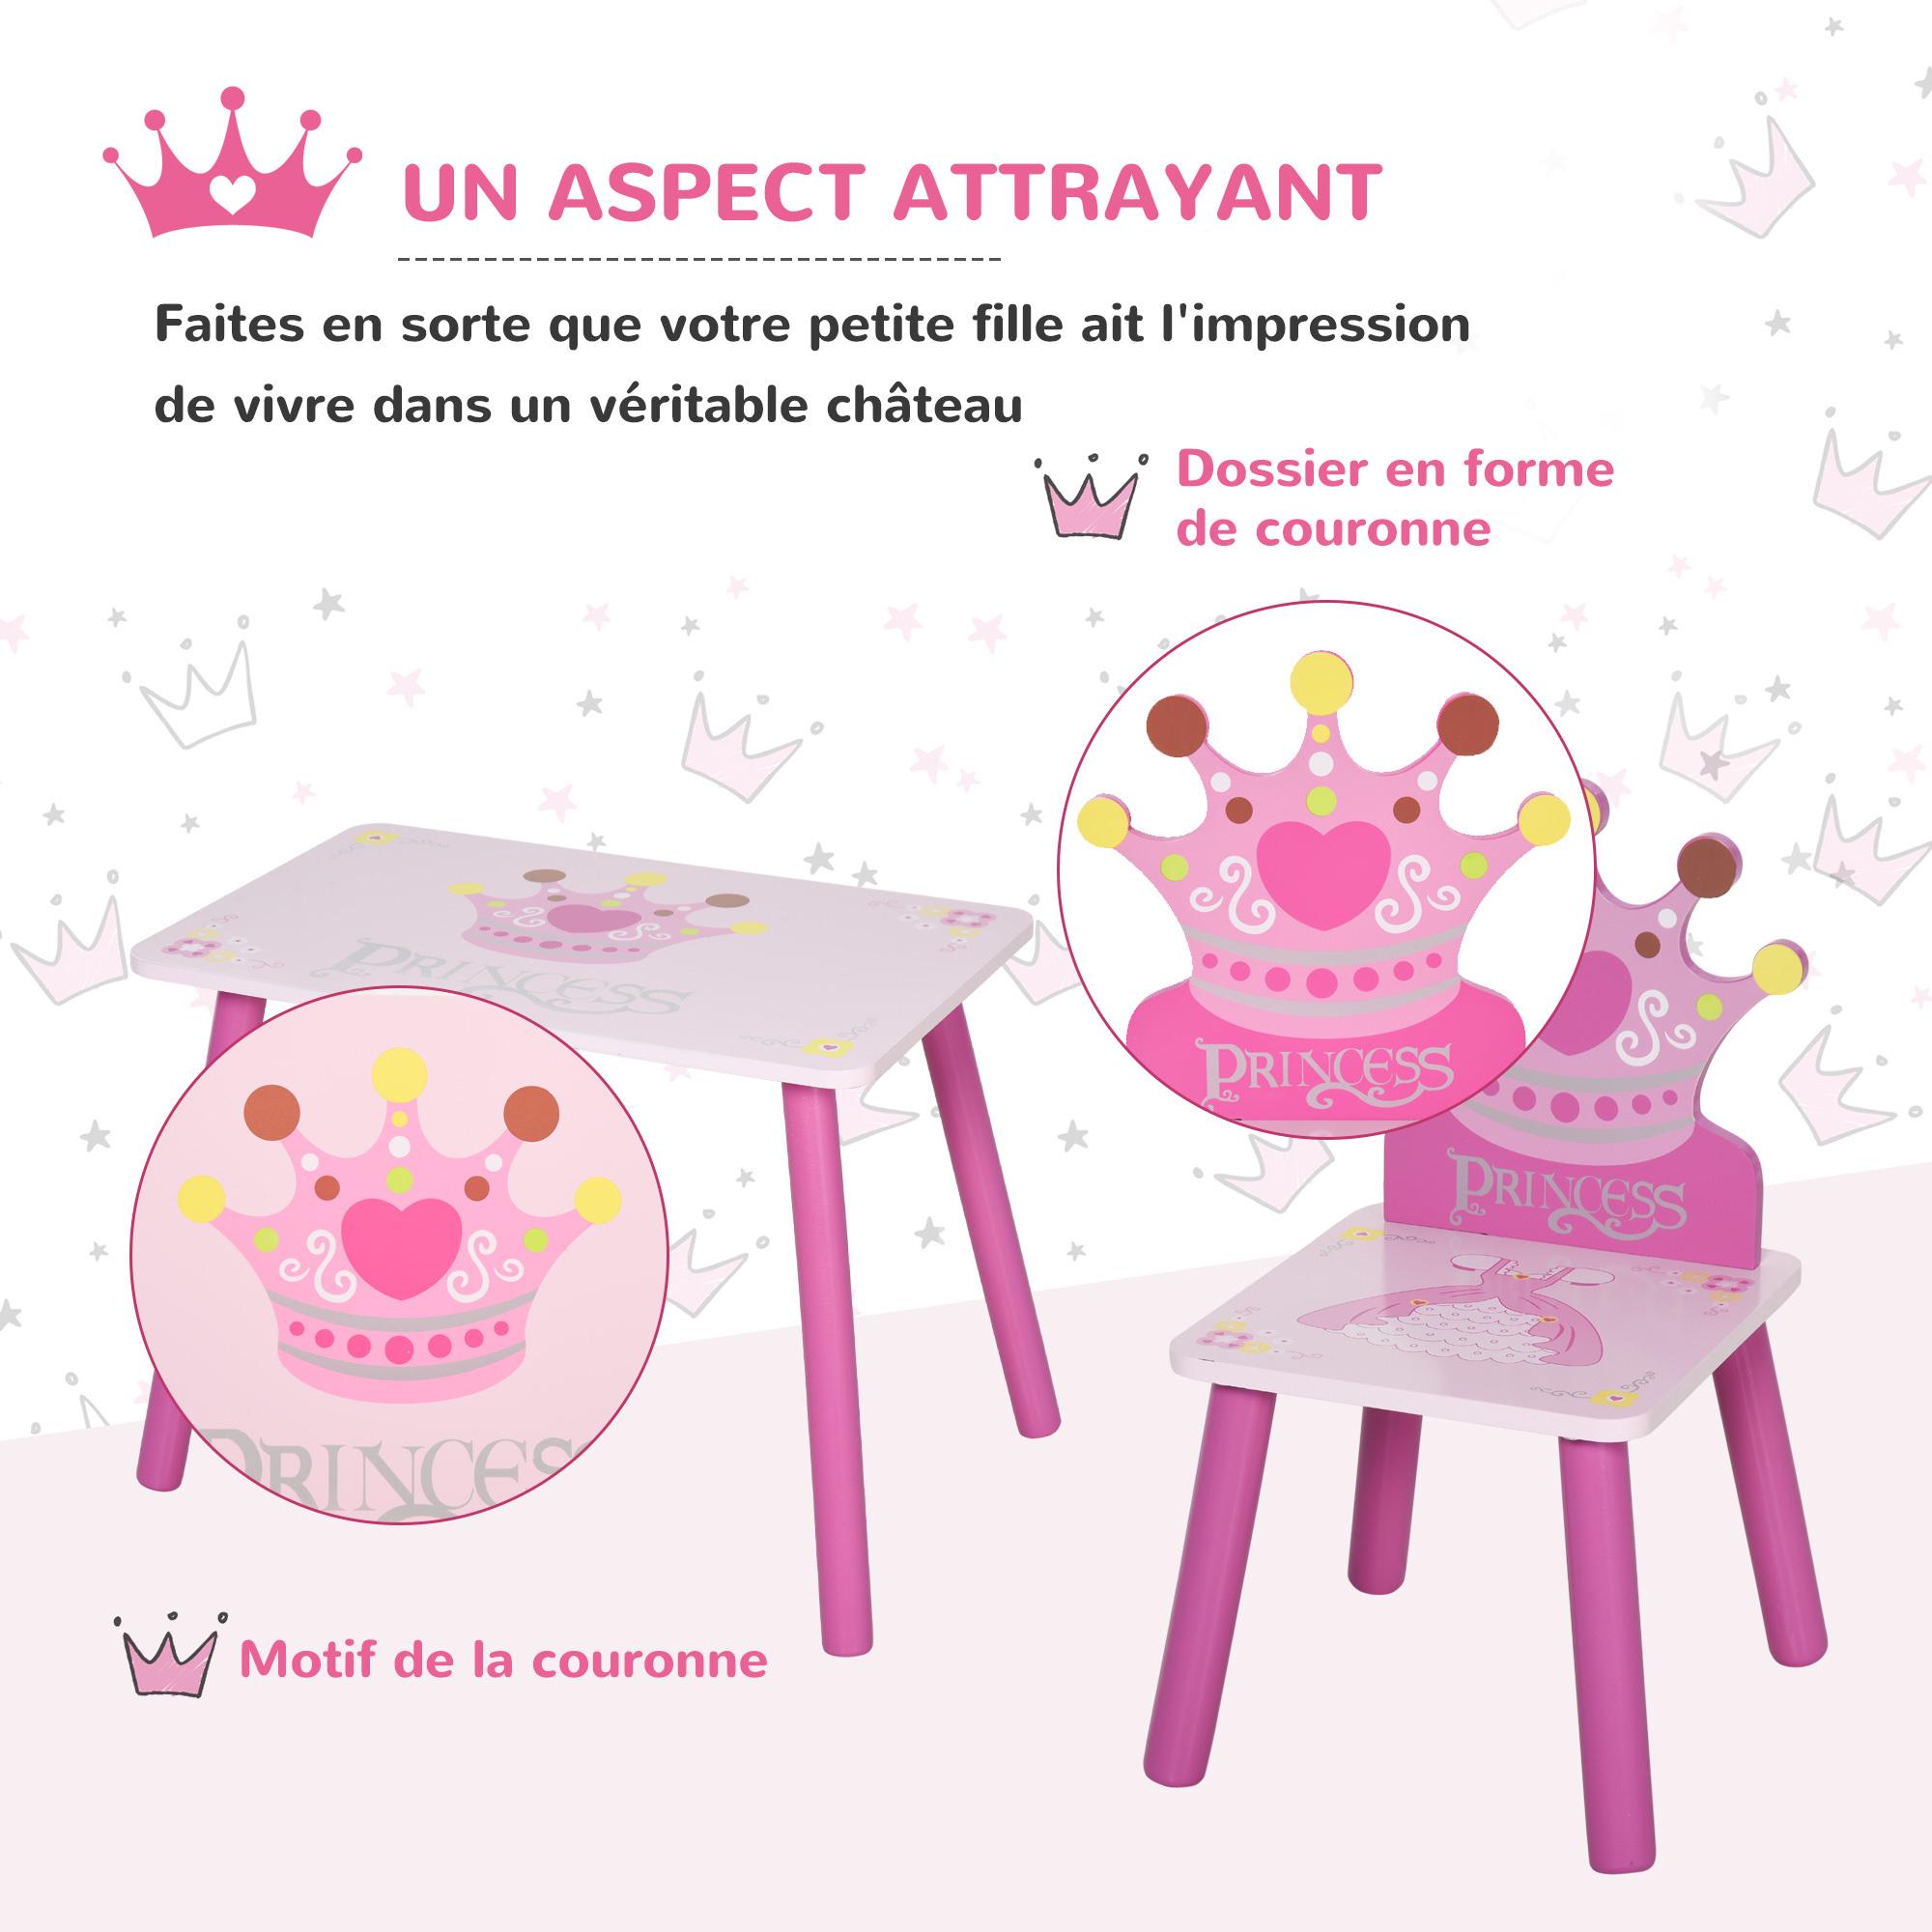 Ensemble table et chaises enfant design princesse motif couronne bois pin MDF rose